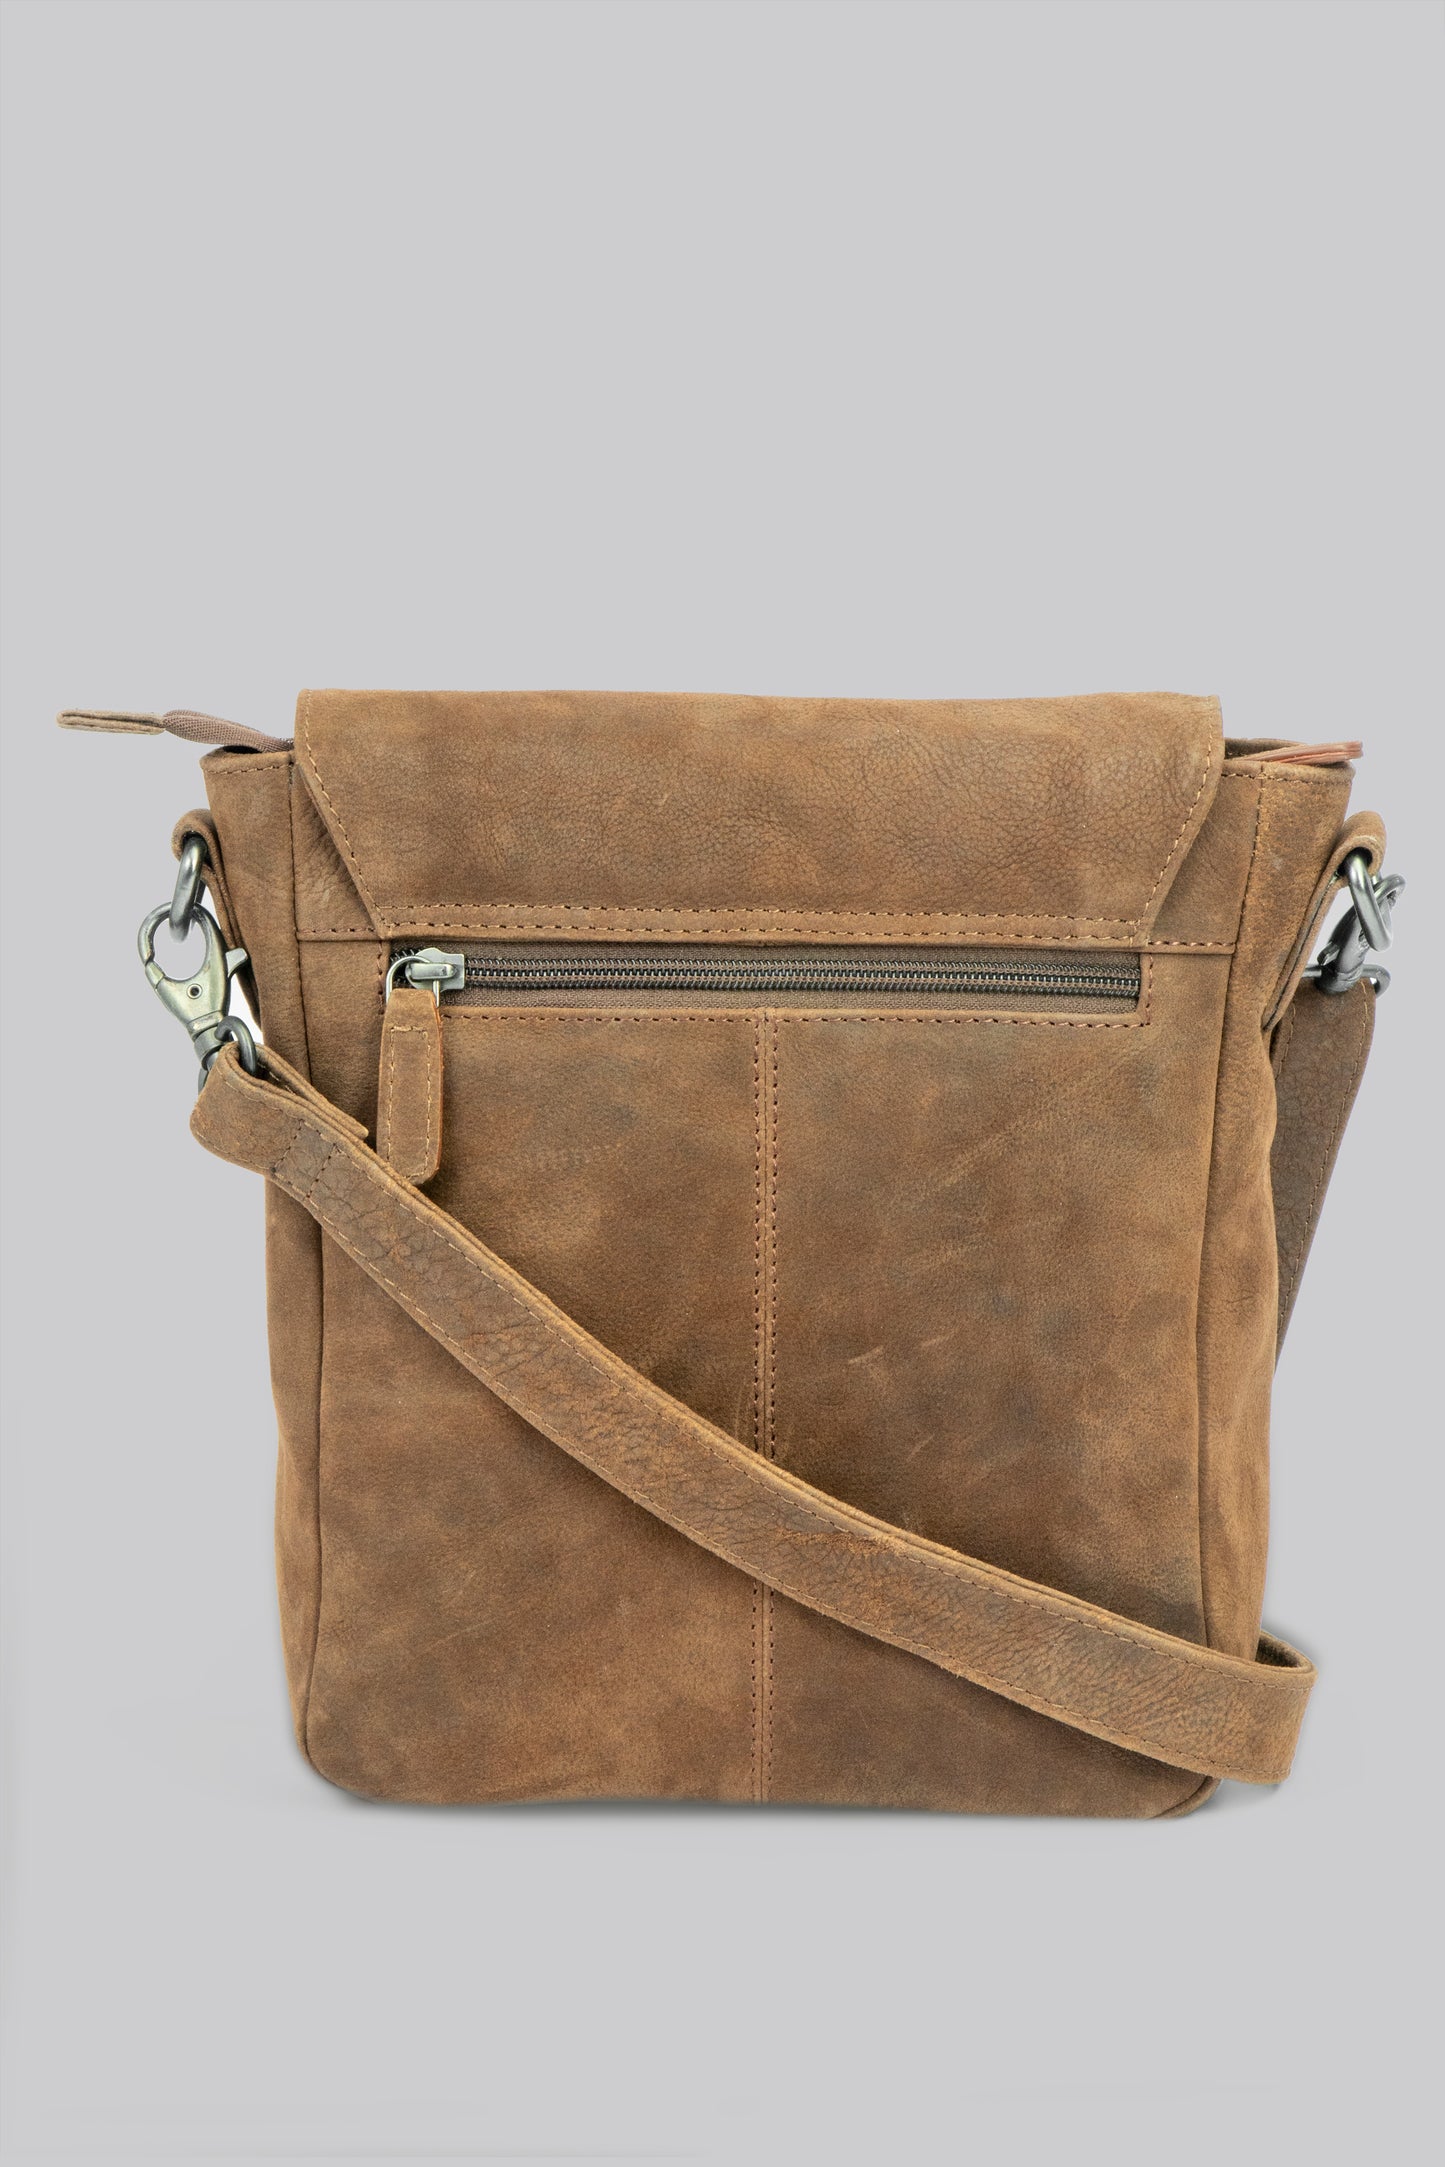 EvoLeather Nomad Messenger Bag